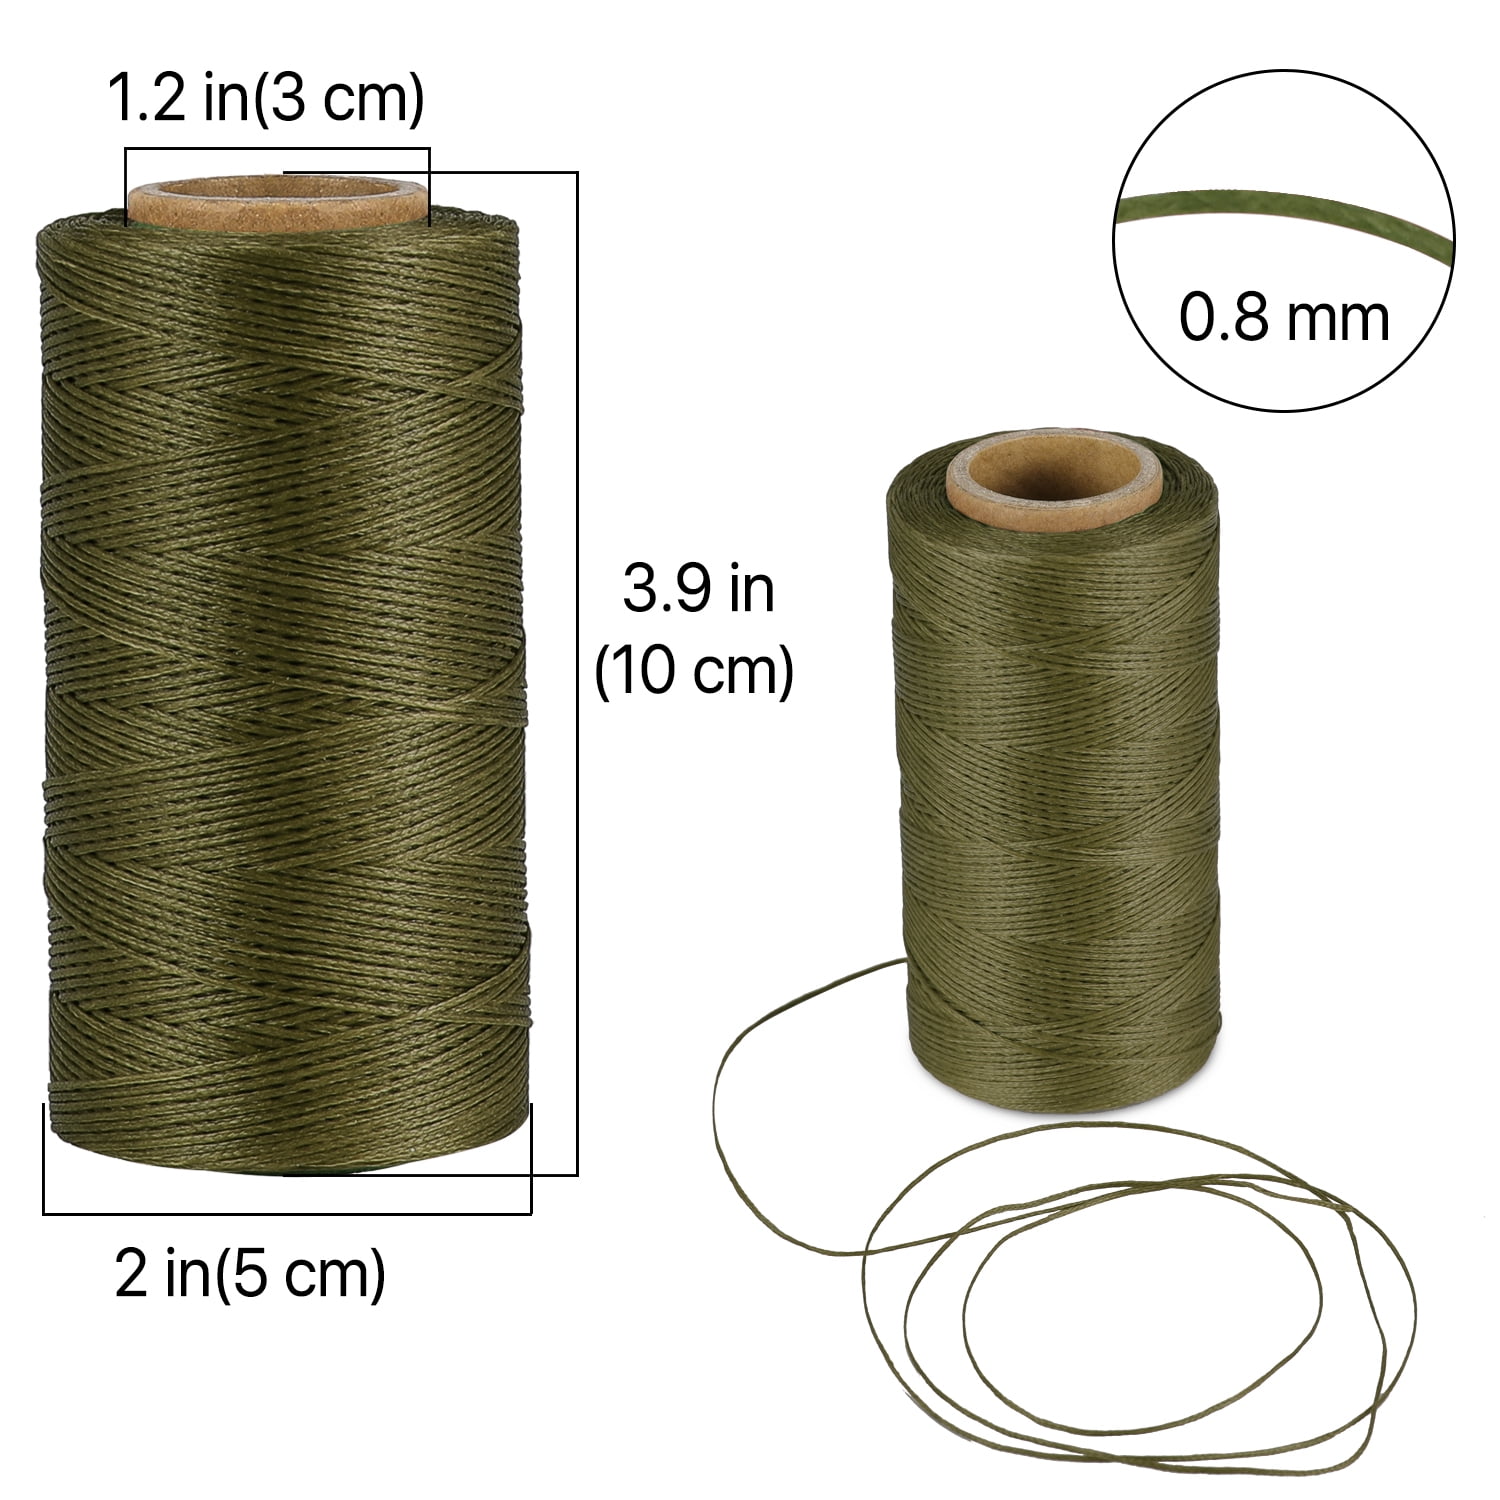 sea-green waxed Brazilian cord, knotting twine, craft cord, waxed cord,  sea-green cord, waxed cord